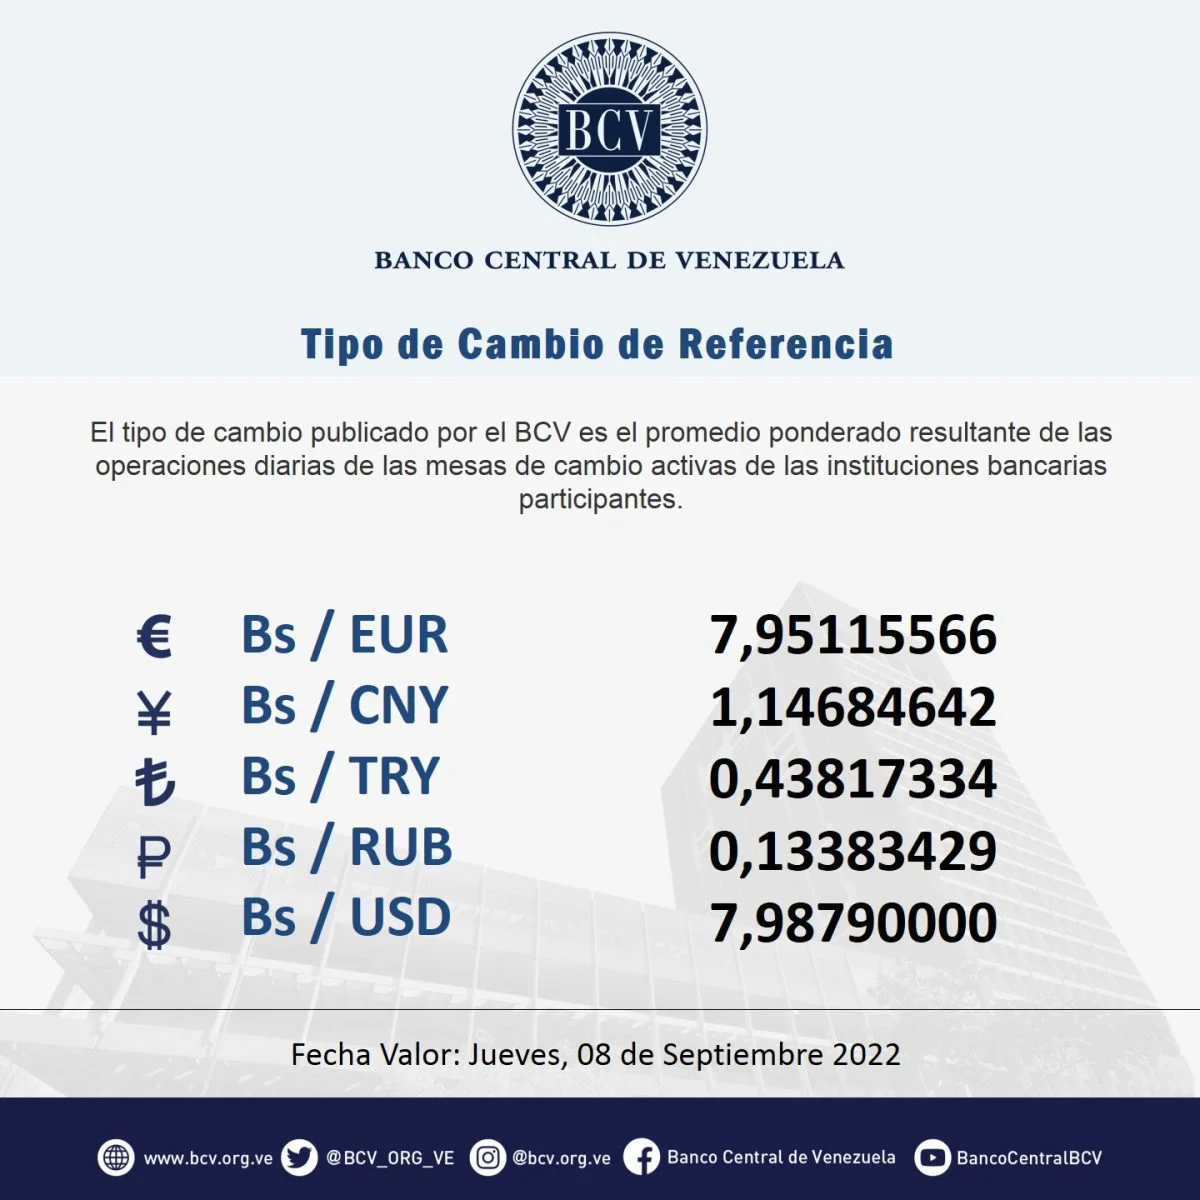 dolartoday en venezuela precio del dolar jueves 8 de septiembre de 2022 laverdaddemonagas.com bcv4